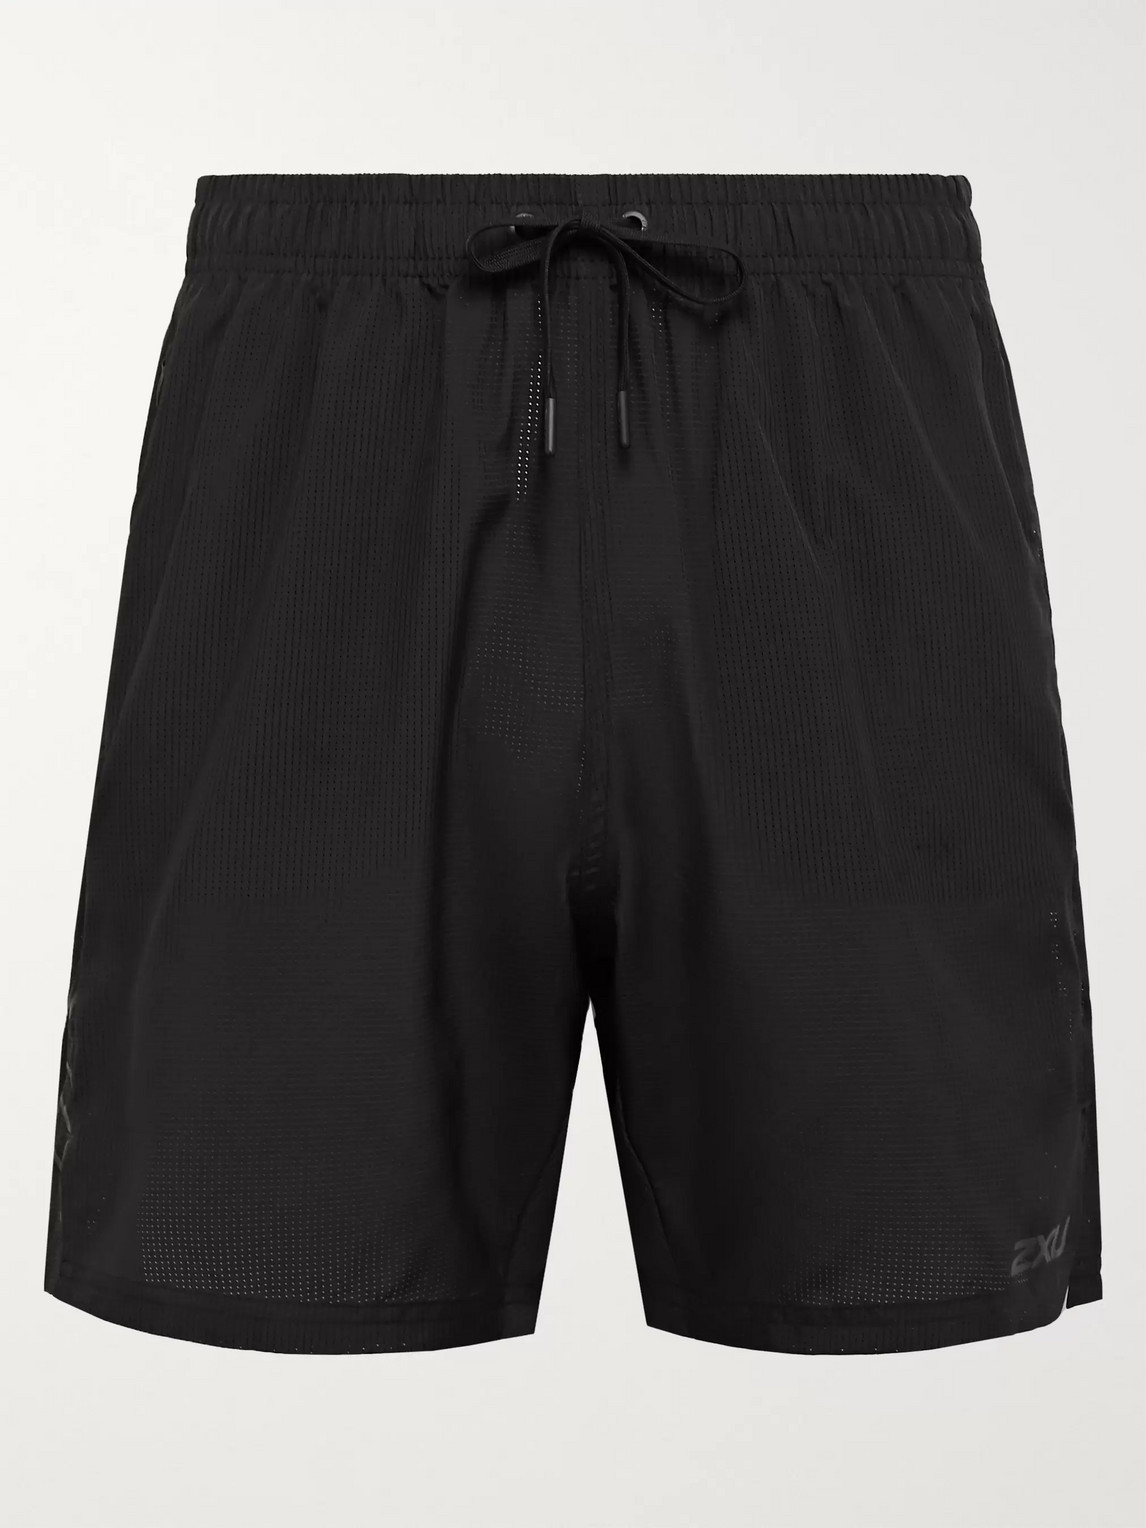 2xu Xctrl Drawstring Shorts In Black